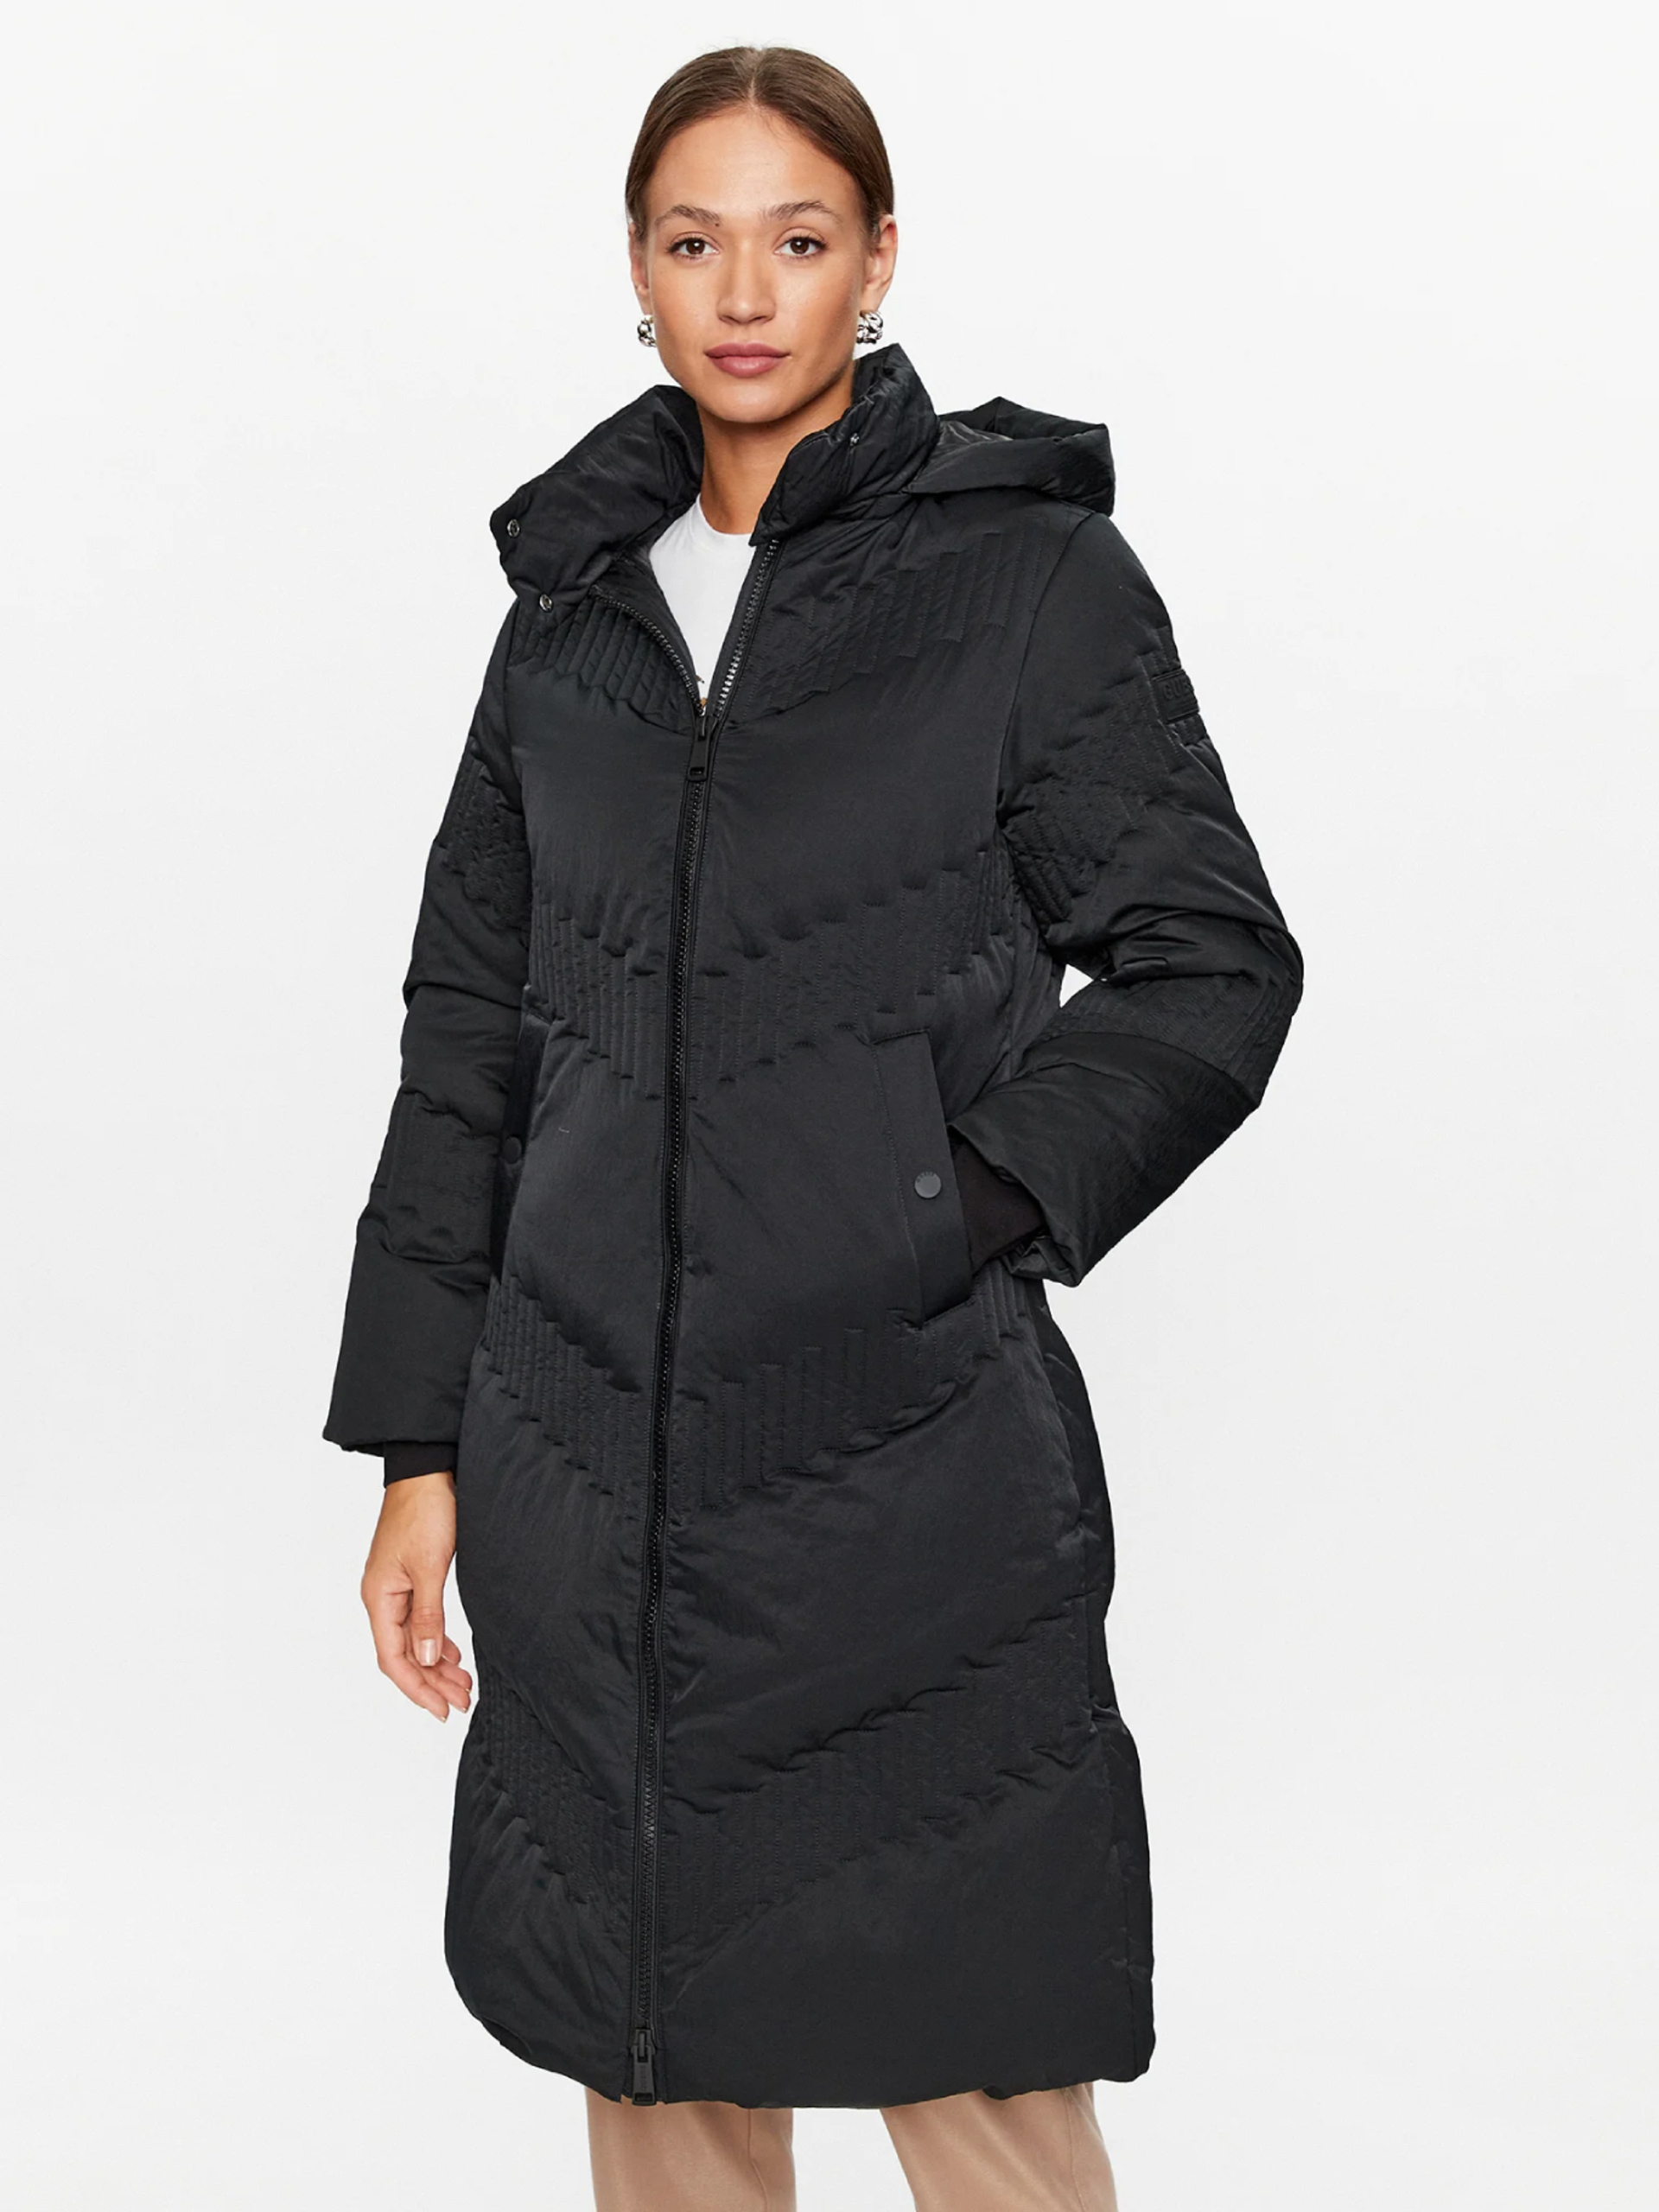 Guess dámský černý péřový kabát - S (JBLK)